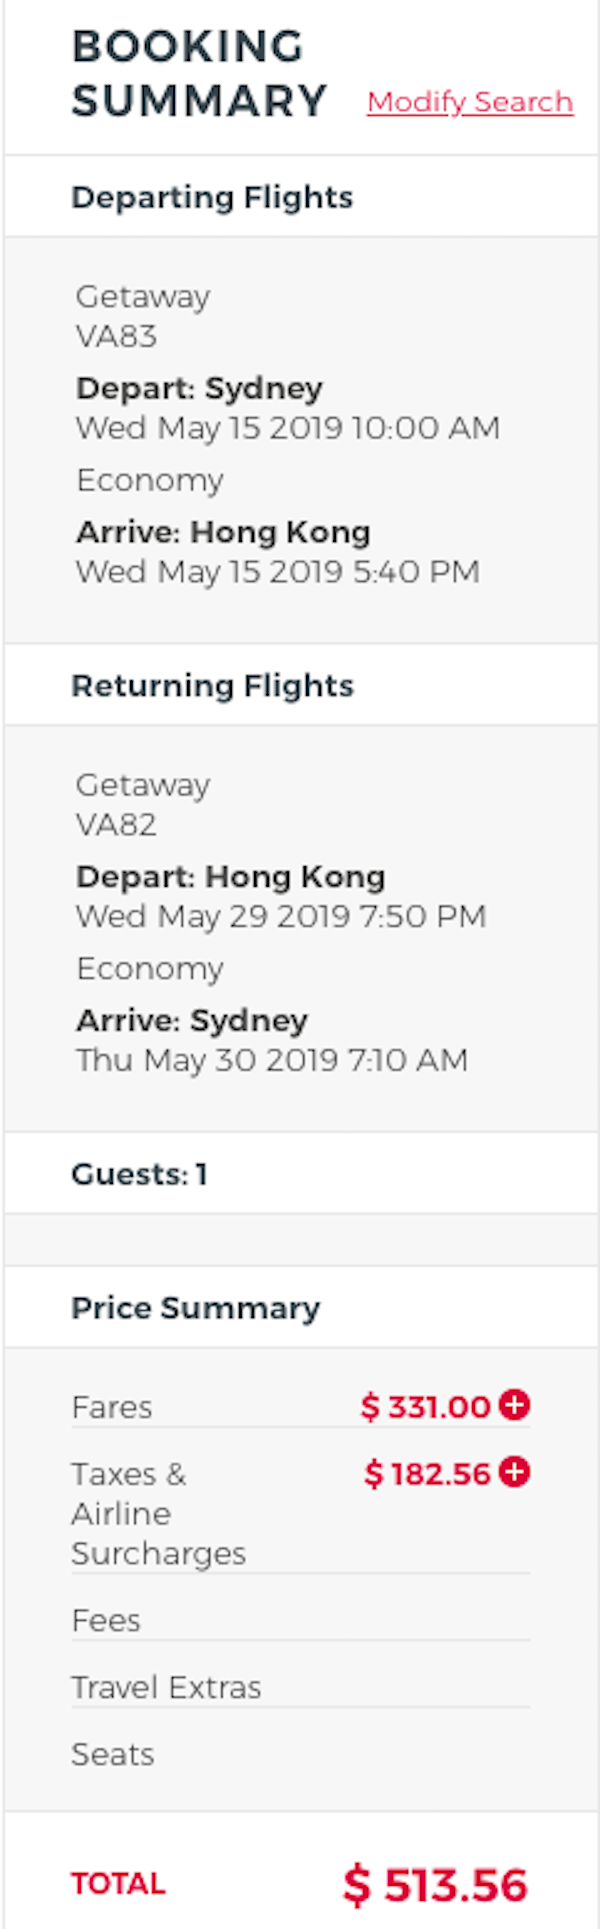 【澳洲】維珍跟機！維珍澳洲航空澳洲來回香港AUD 331 (約HKD 1,808) 起！6月13日前出發